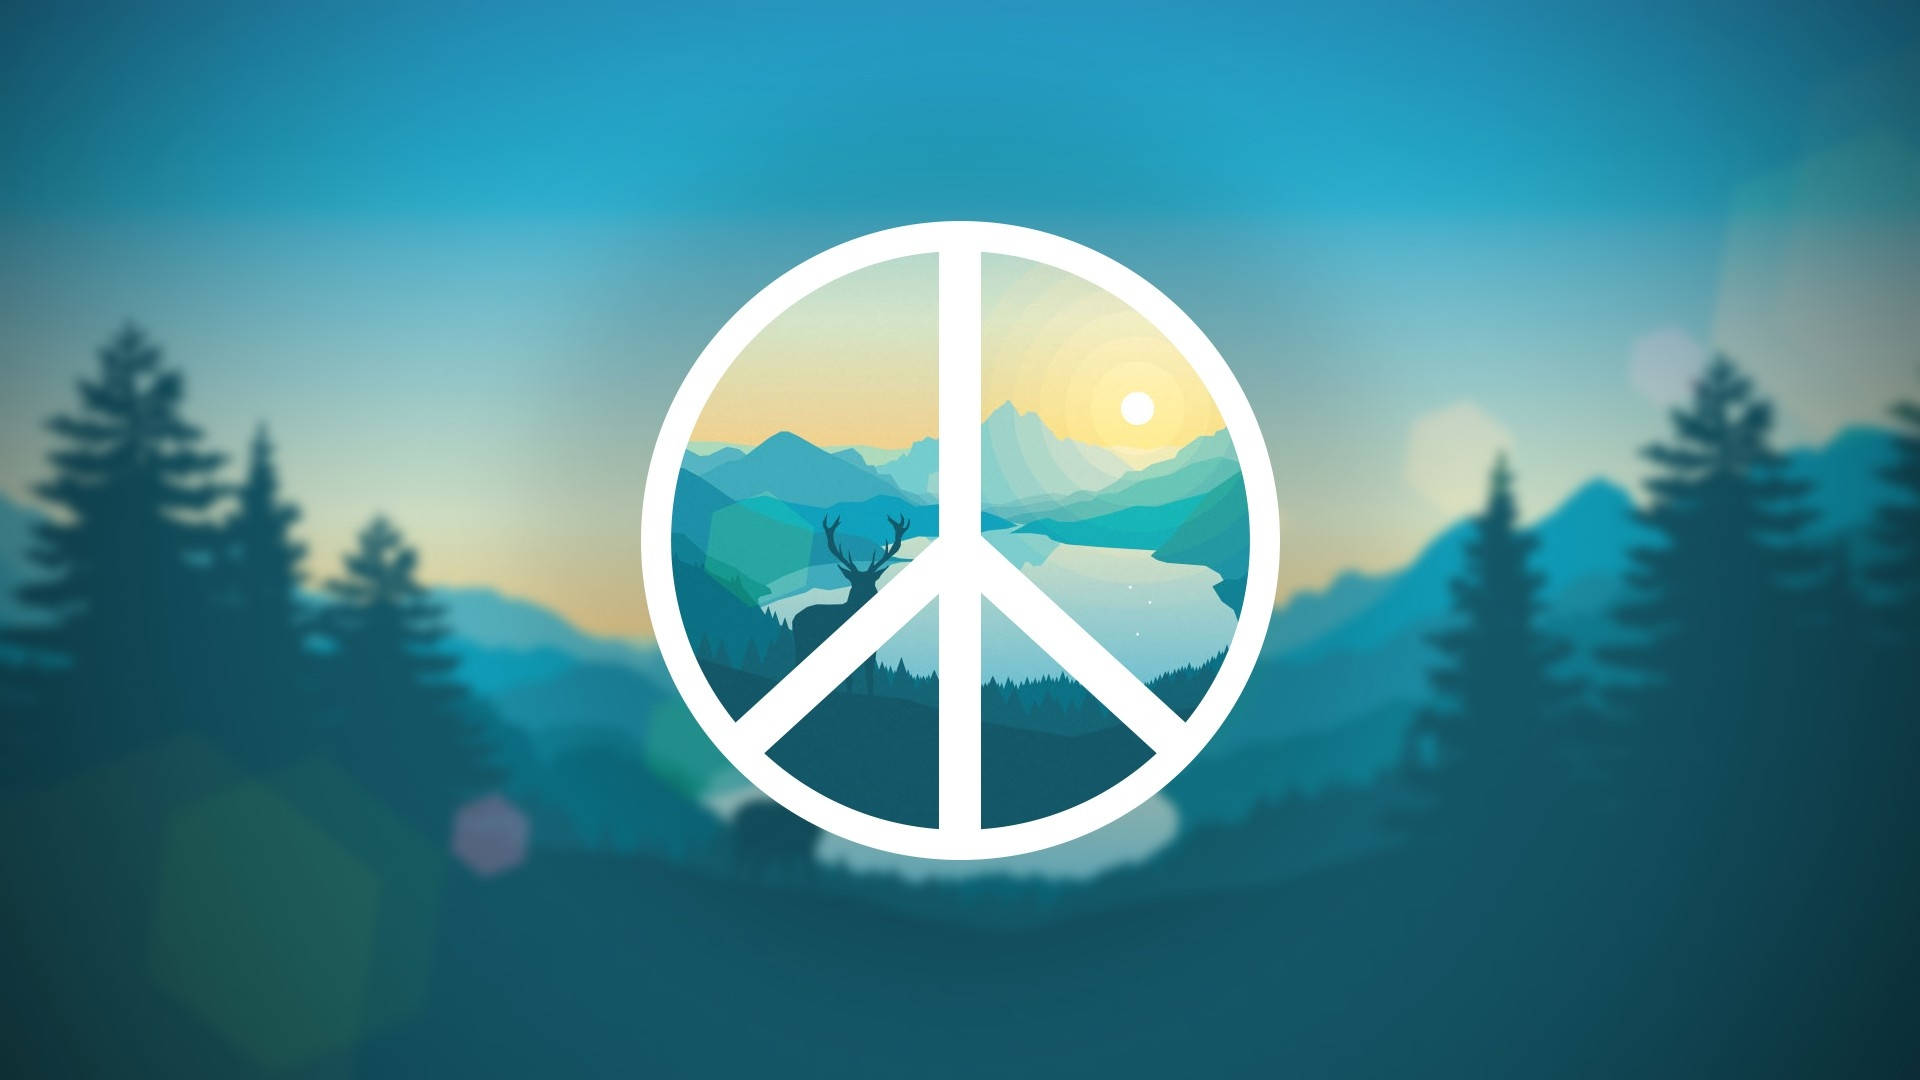 Peace Mountains Digital Art Wallpaper